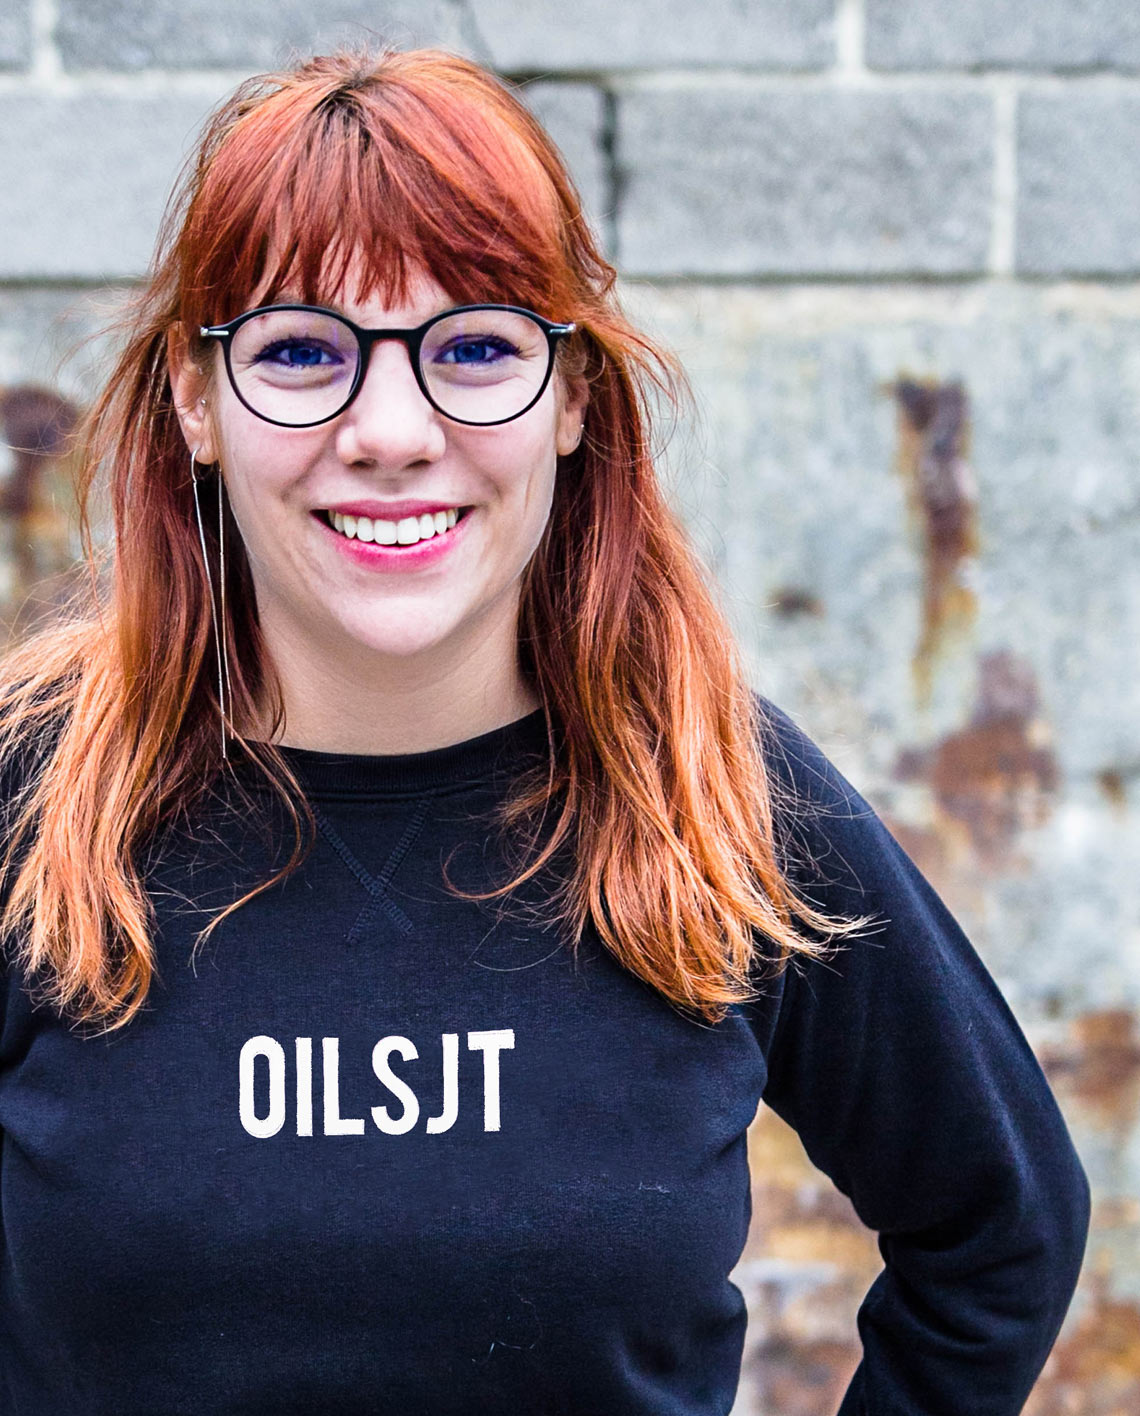 Aalst online sweater kopen intdialect